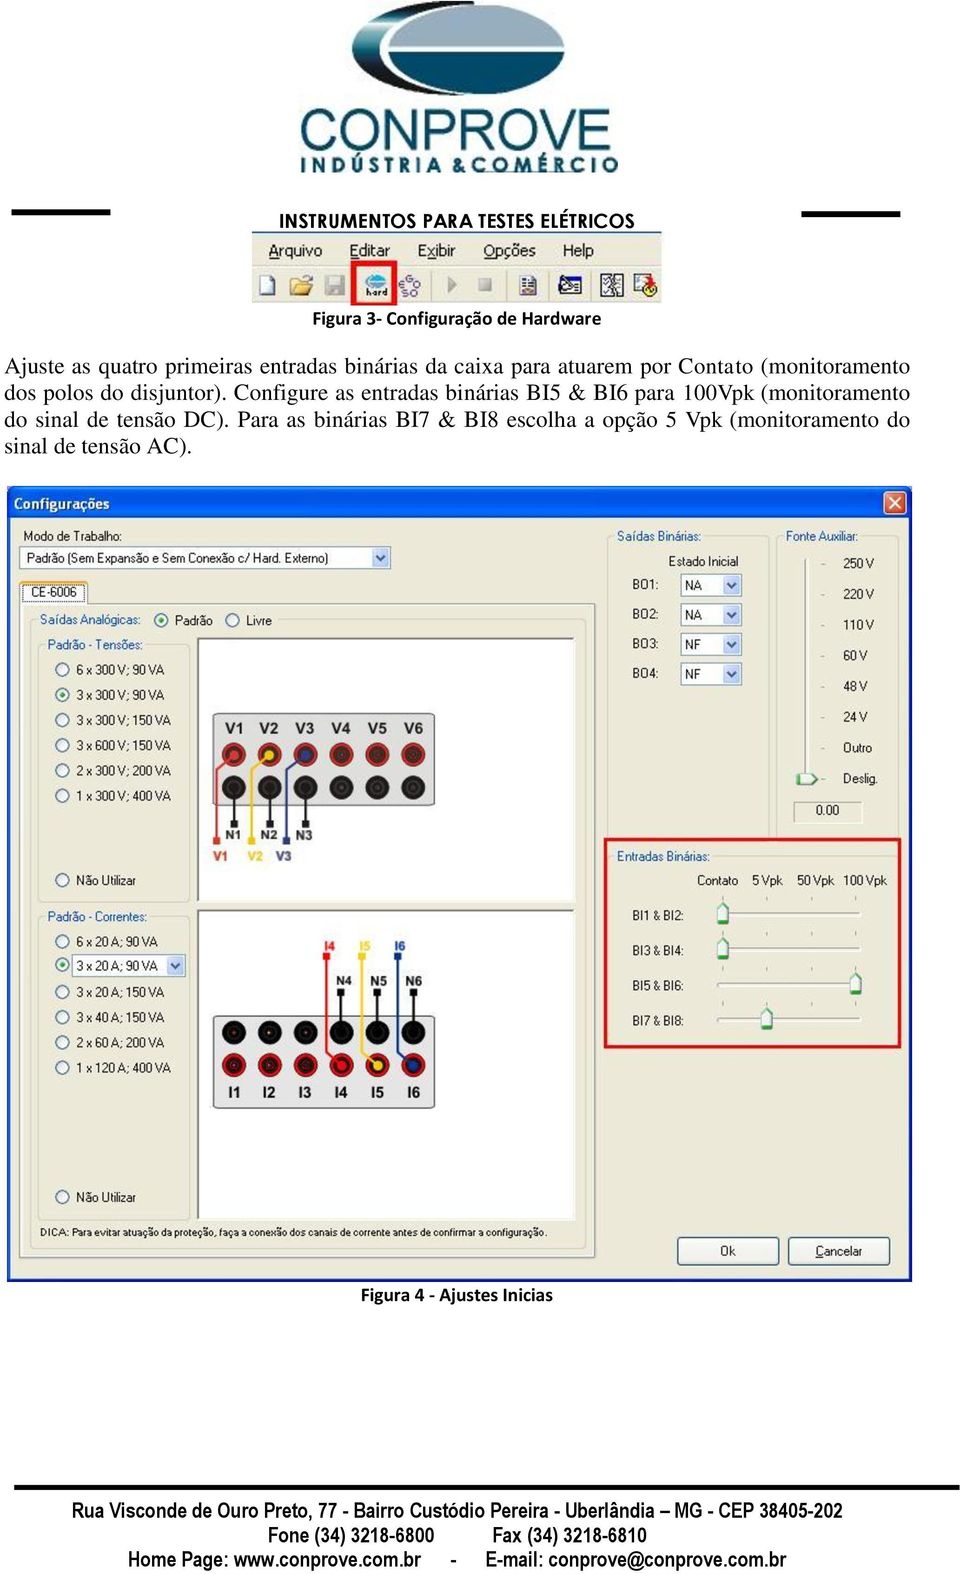 Configure as entradas binárias BI5 & BI6 para 100Vpk (monitoramento do sinal de tensão